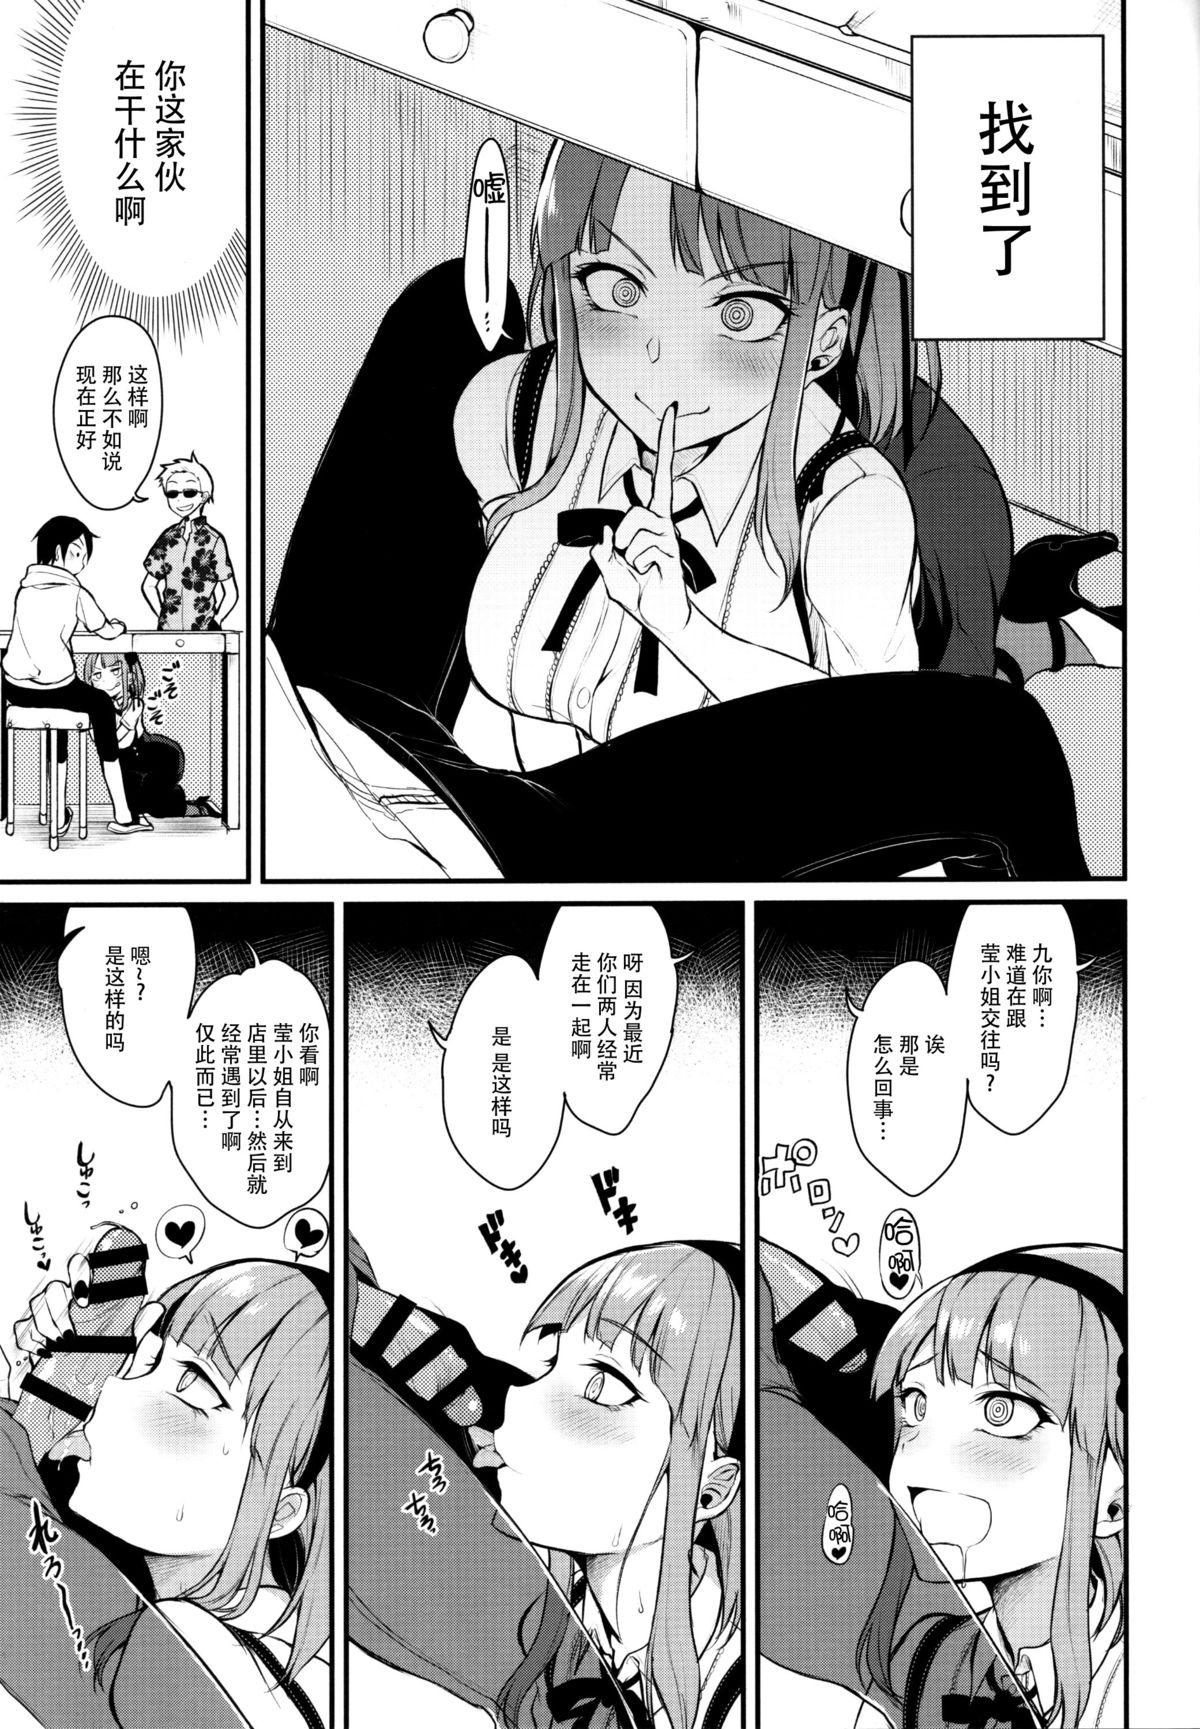 Dicksucking Otona no Dagashi 3 - Dagashi kashi High - Page 12